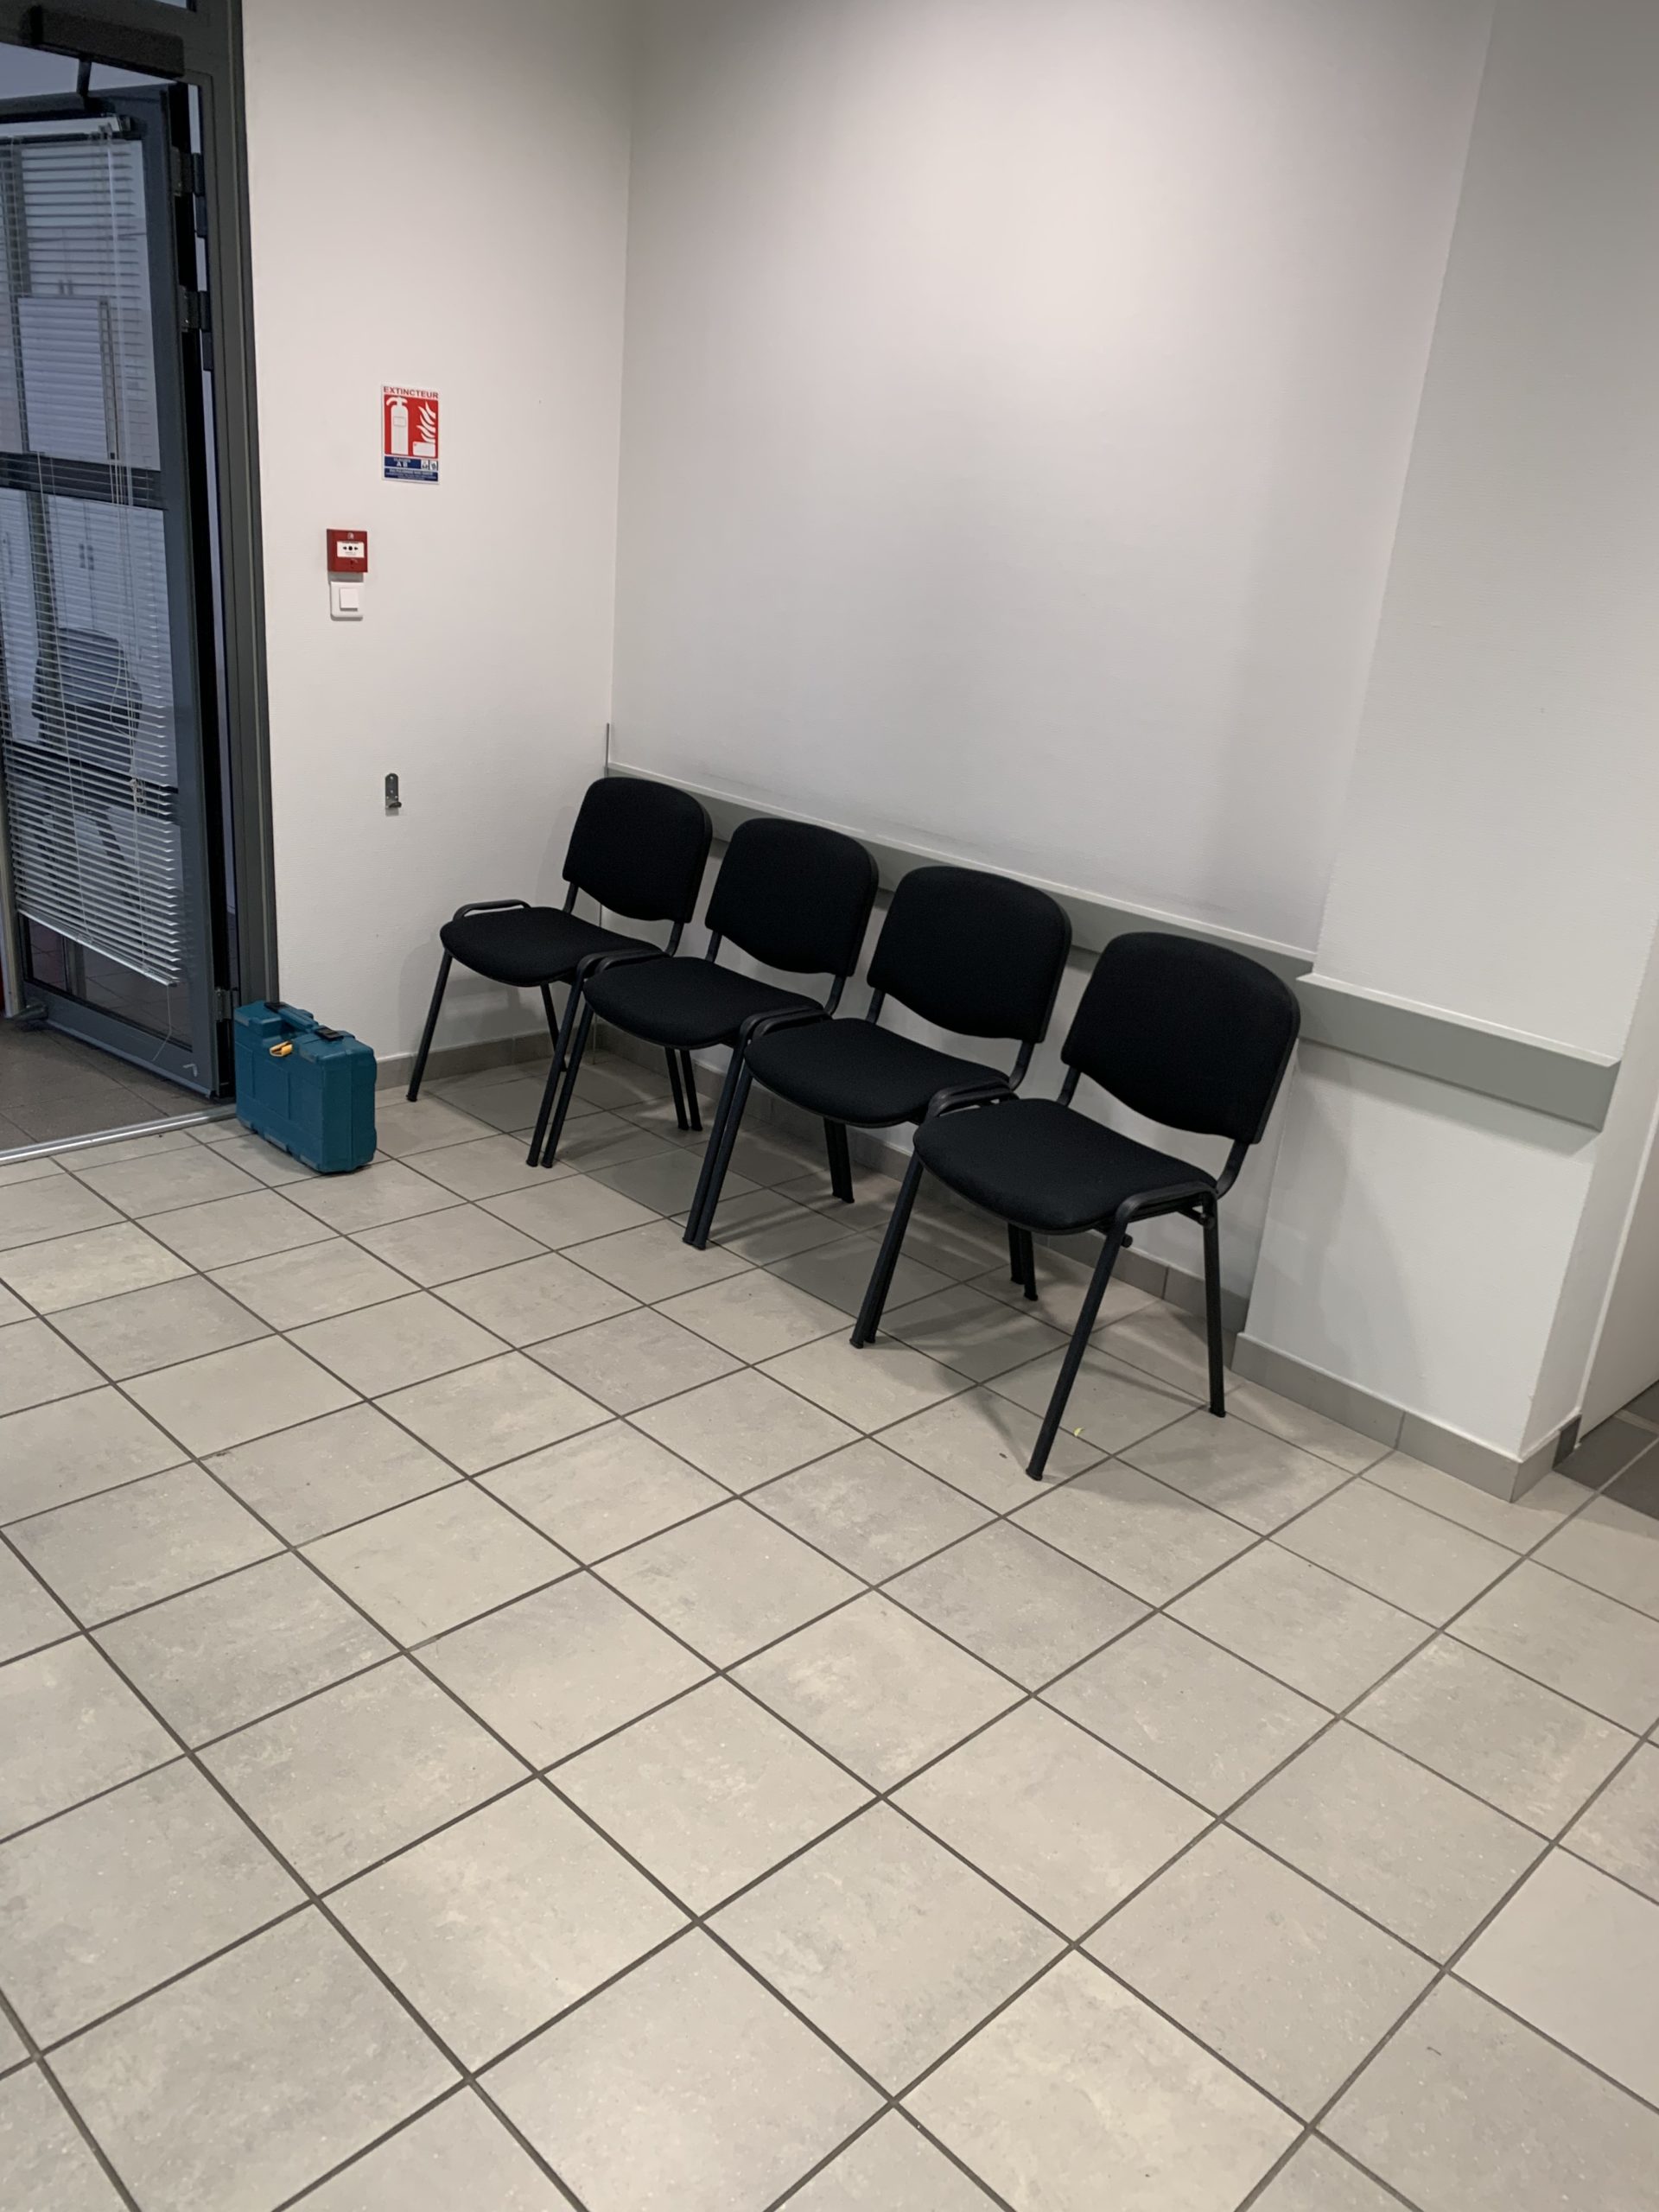 chaises visiteurs pour salle d'attente